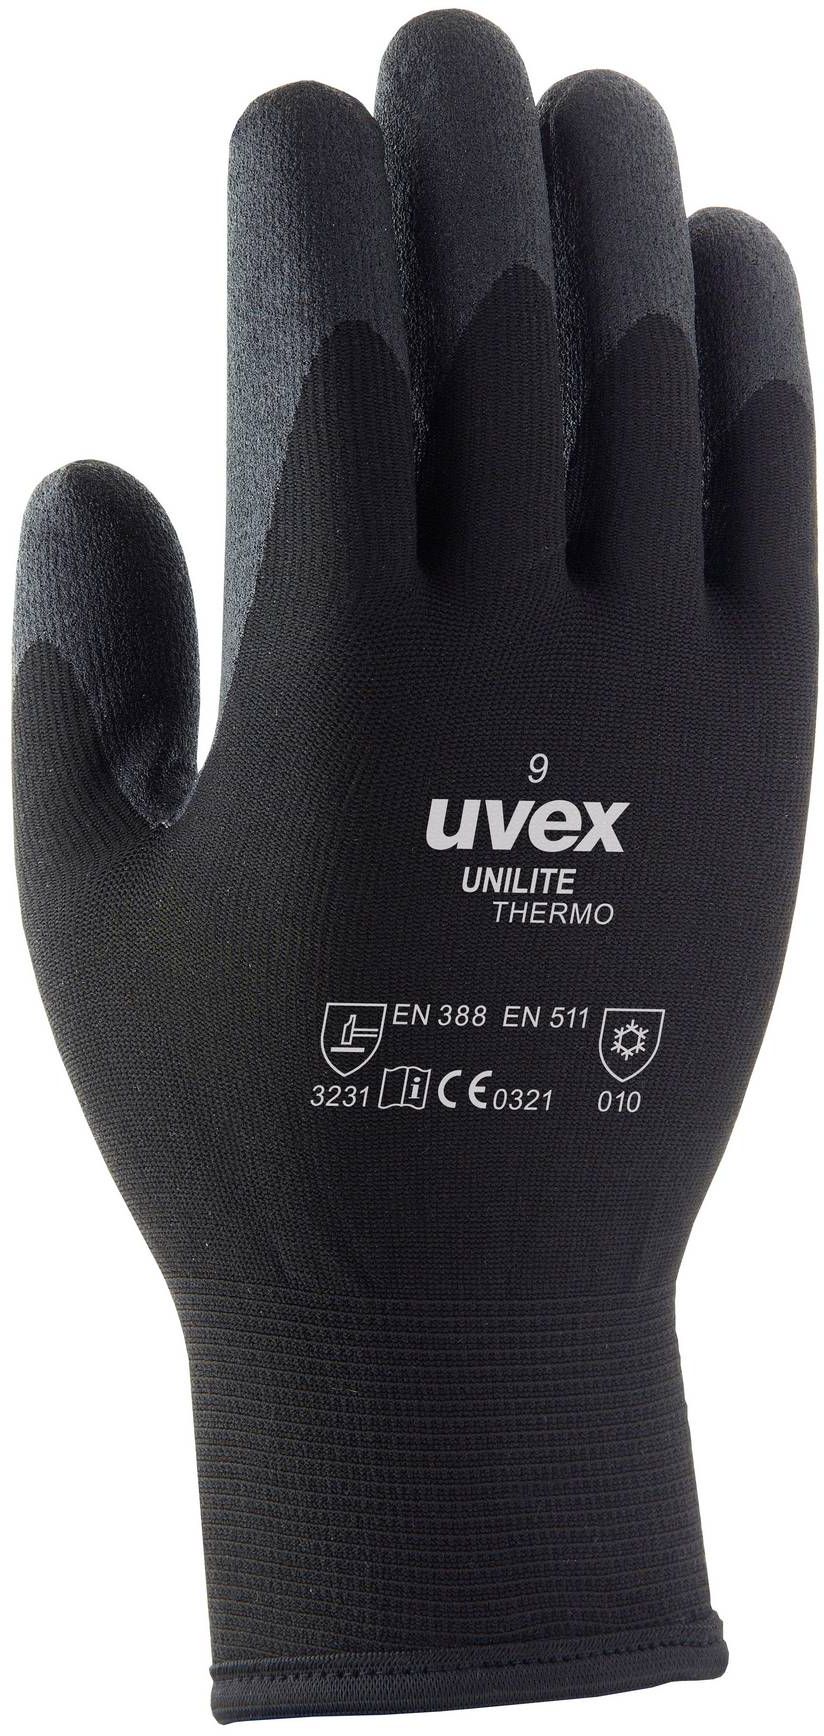 UVEX Winter Handschuh Unilite Thermo Gr. 8, schwarz, Art. 60593 - Arbeitsschutz